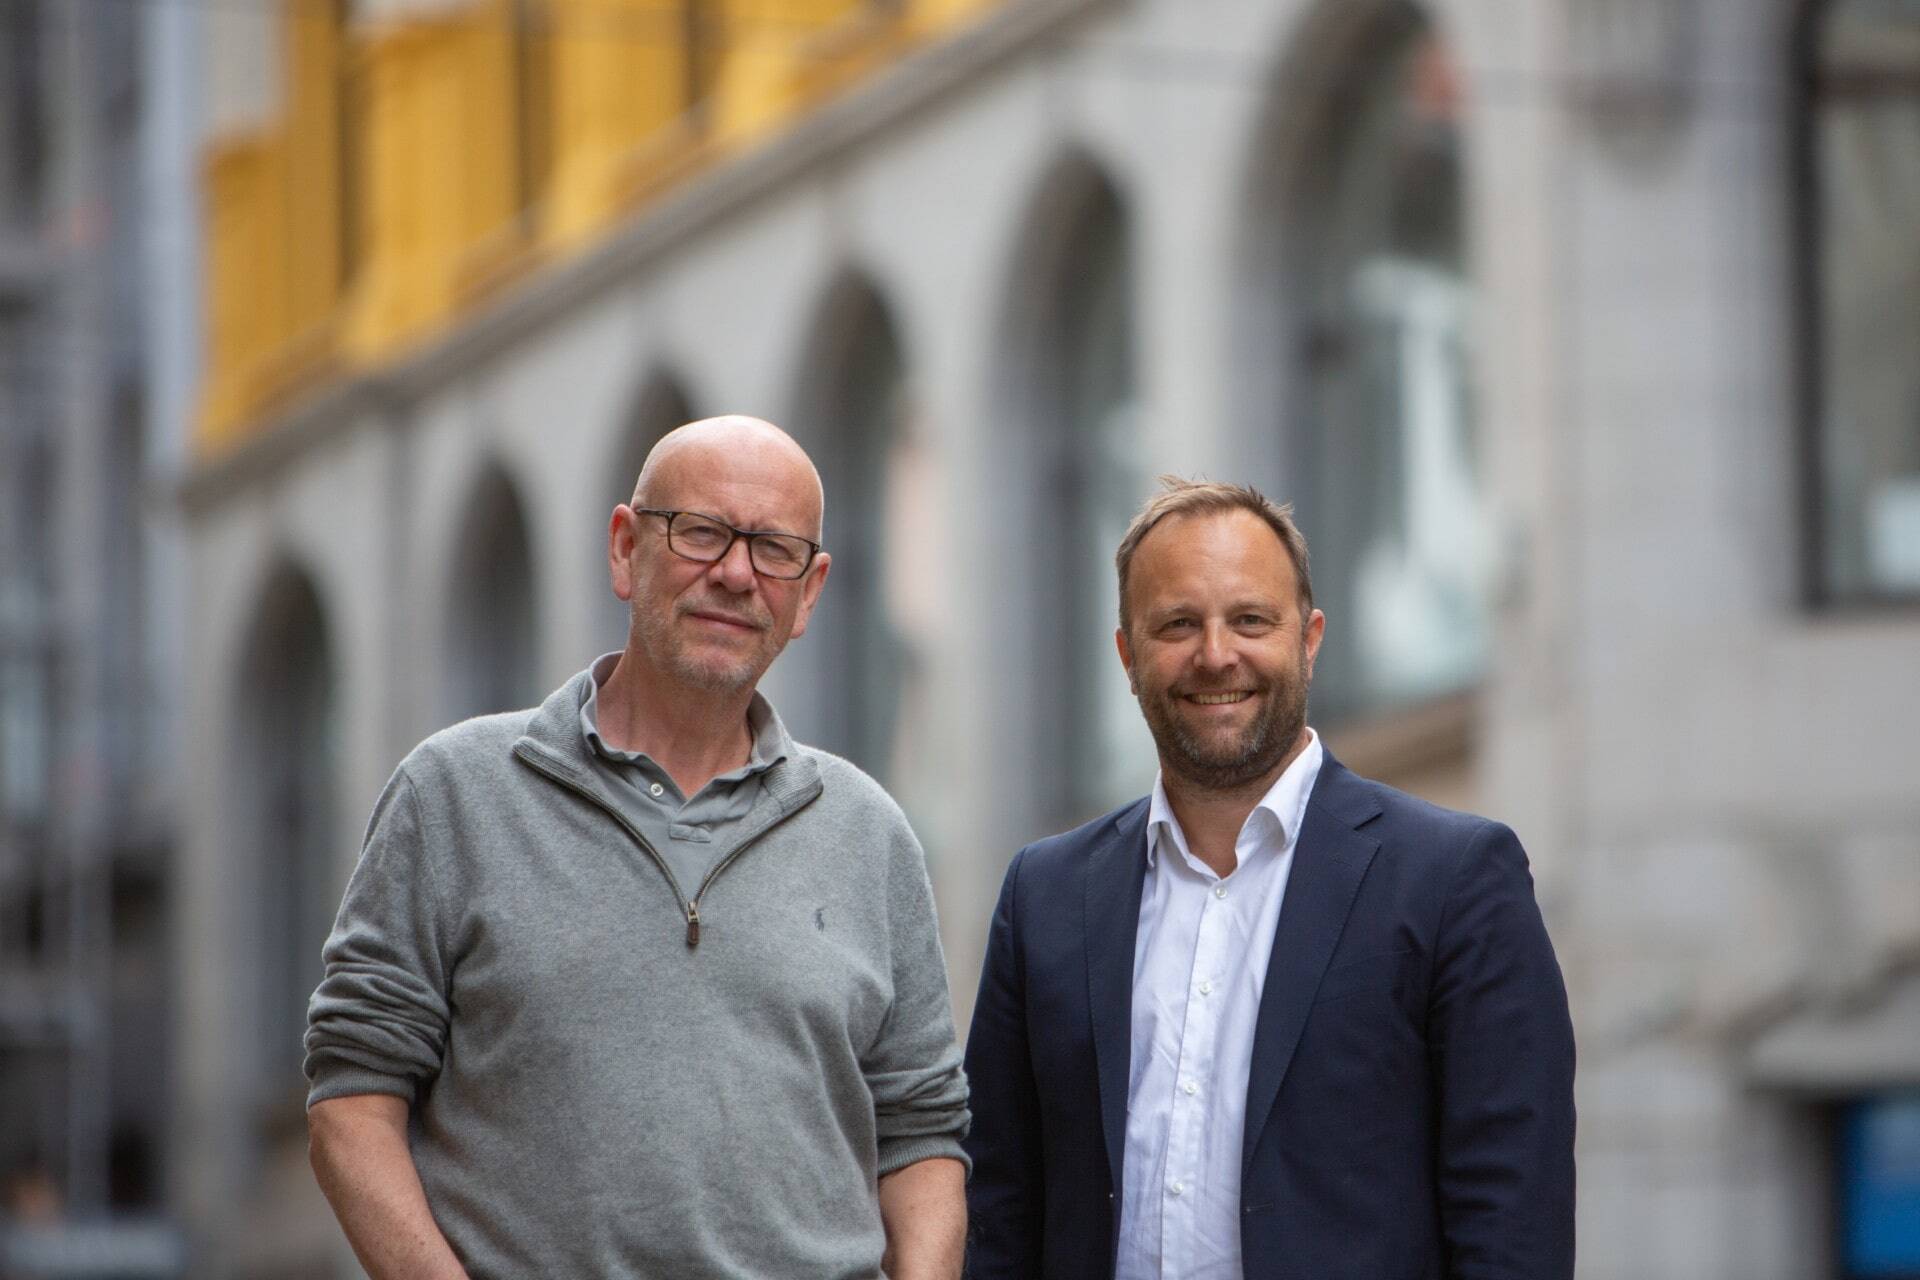 Sindre Beyer har blitt ansatt som ny konsernsjef (CEO) i TRY-gruppen. Grunnlegger, Kjetil Try, fortsetter som daglig leder i TRY Reklame og blir innstilt som ny styreleder i TRY-konsernet.